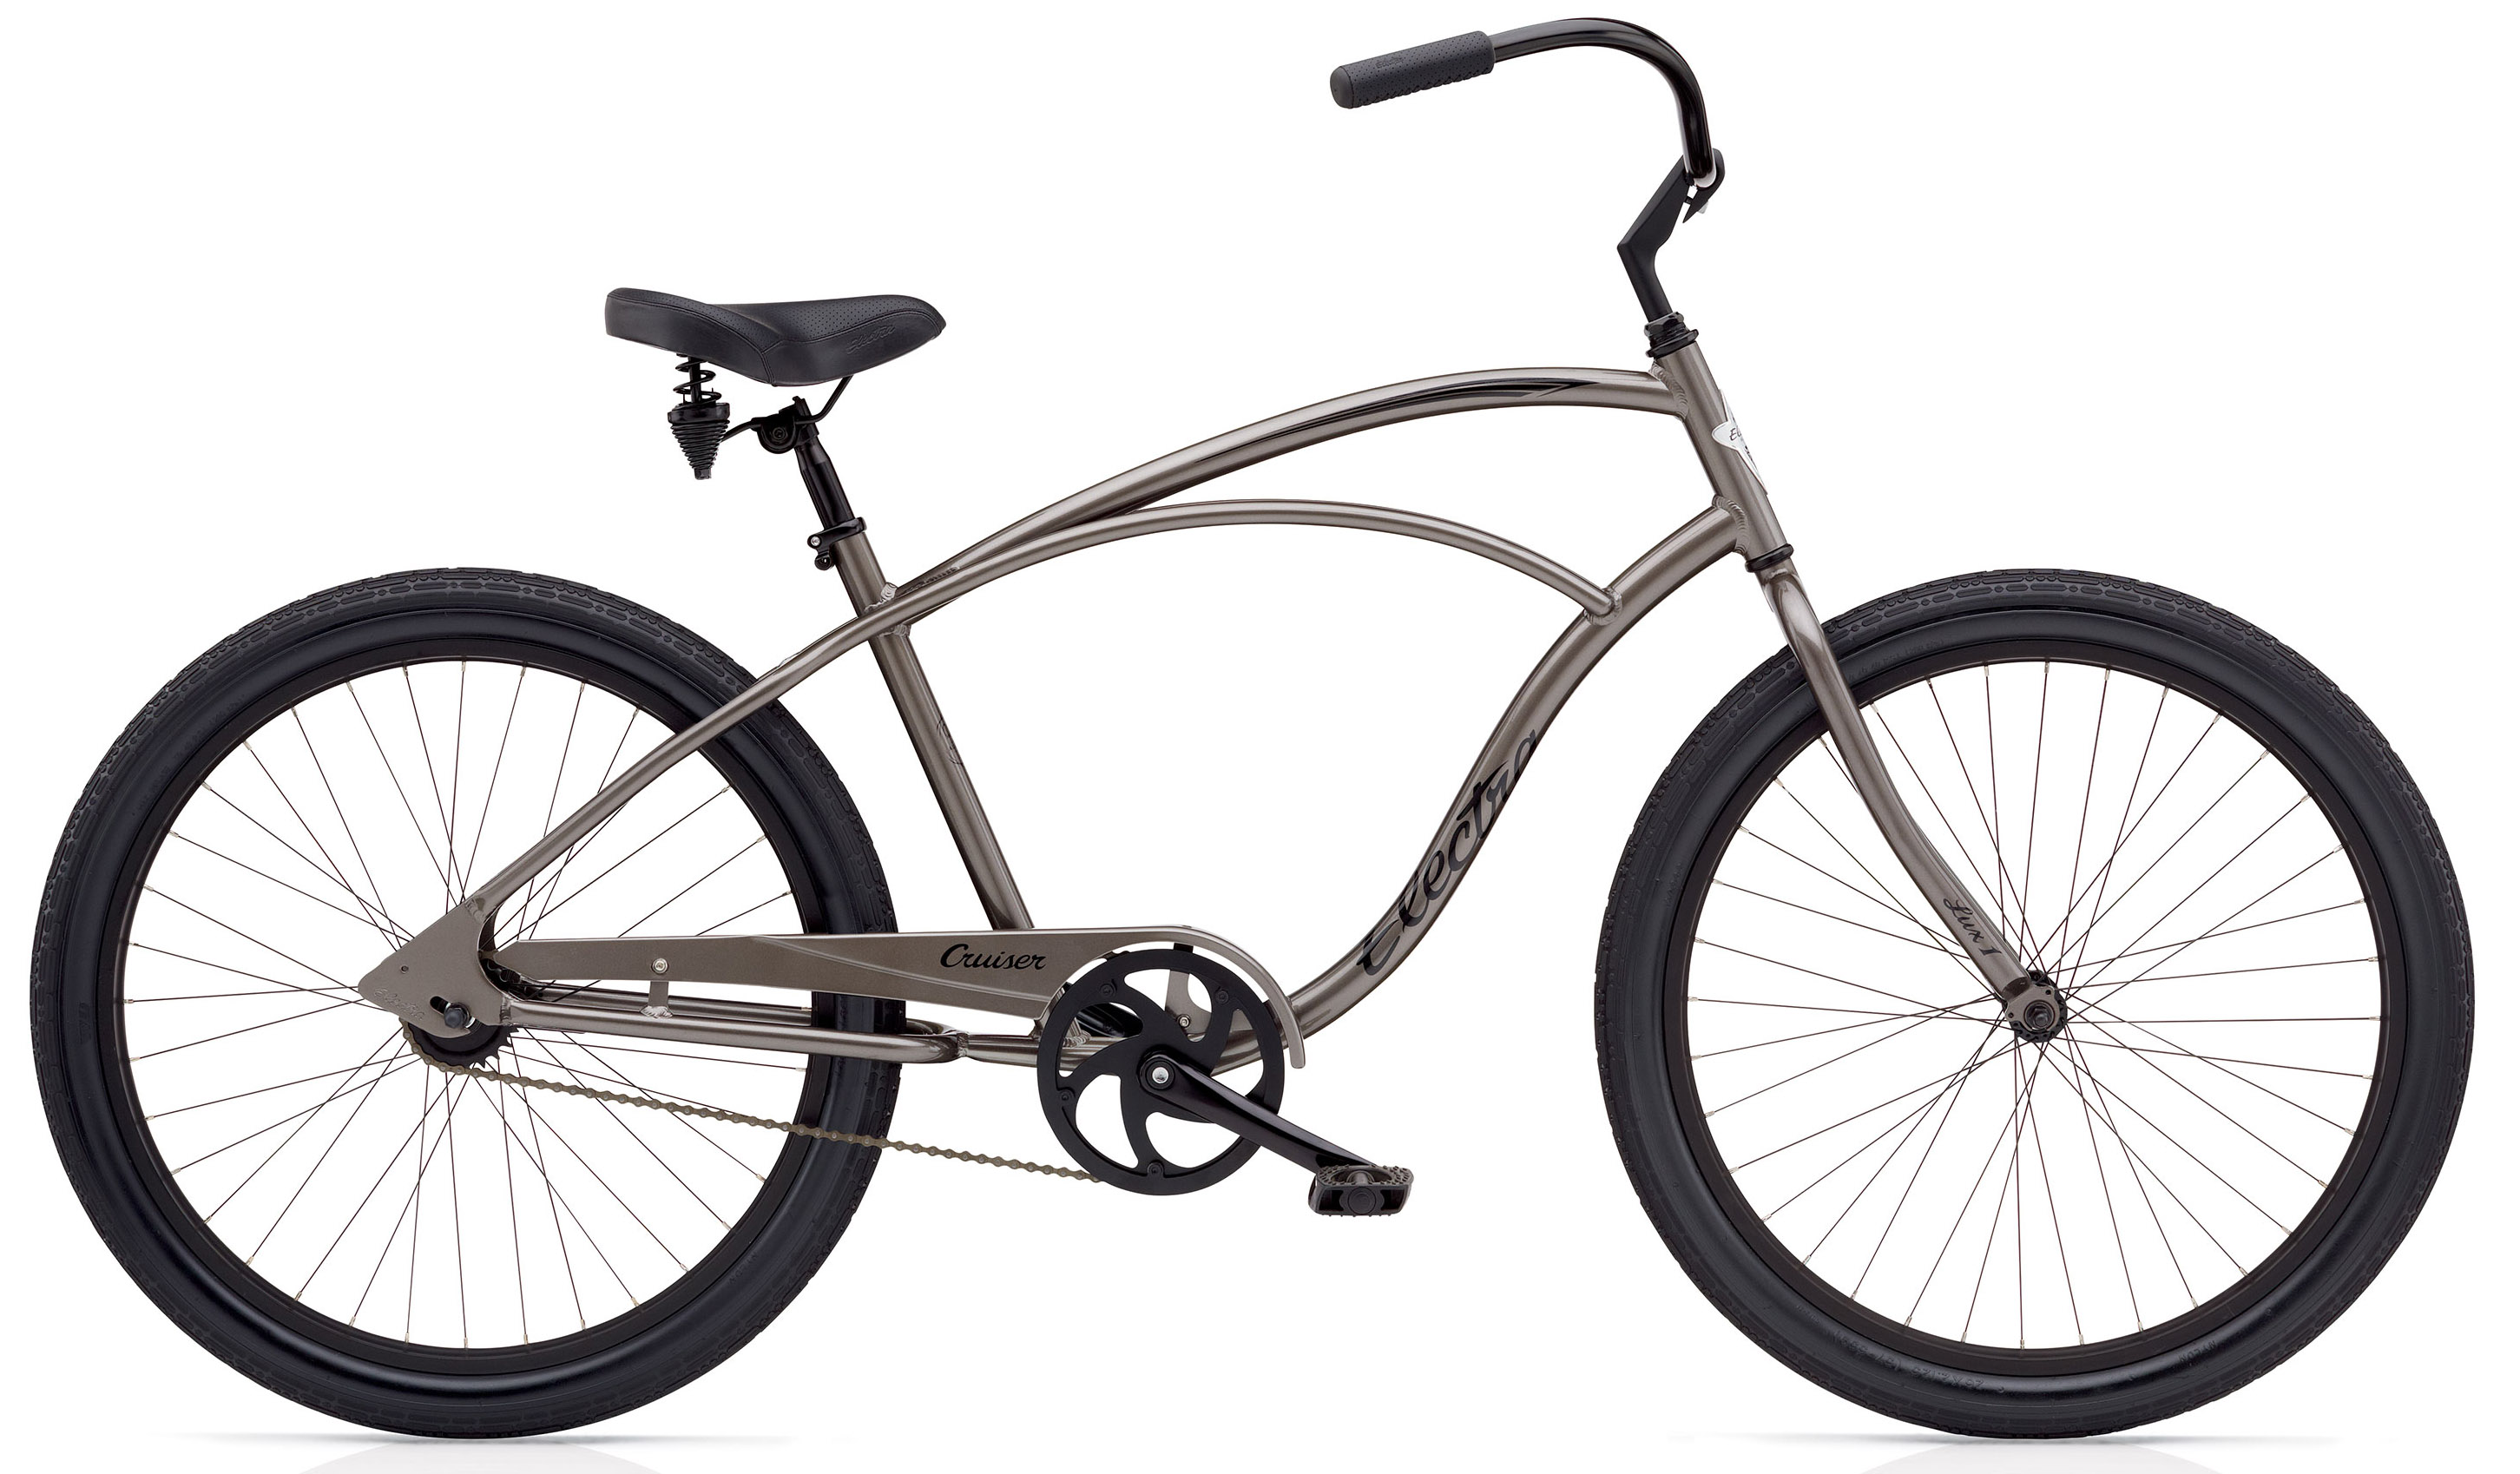  Отзывы о Городском велосипеде Electra Cruiser Lux 3i Mens 2020